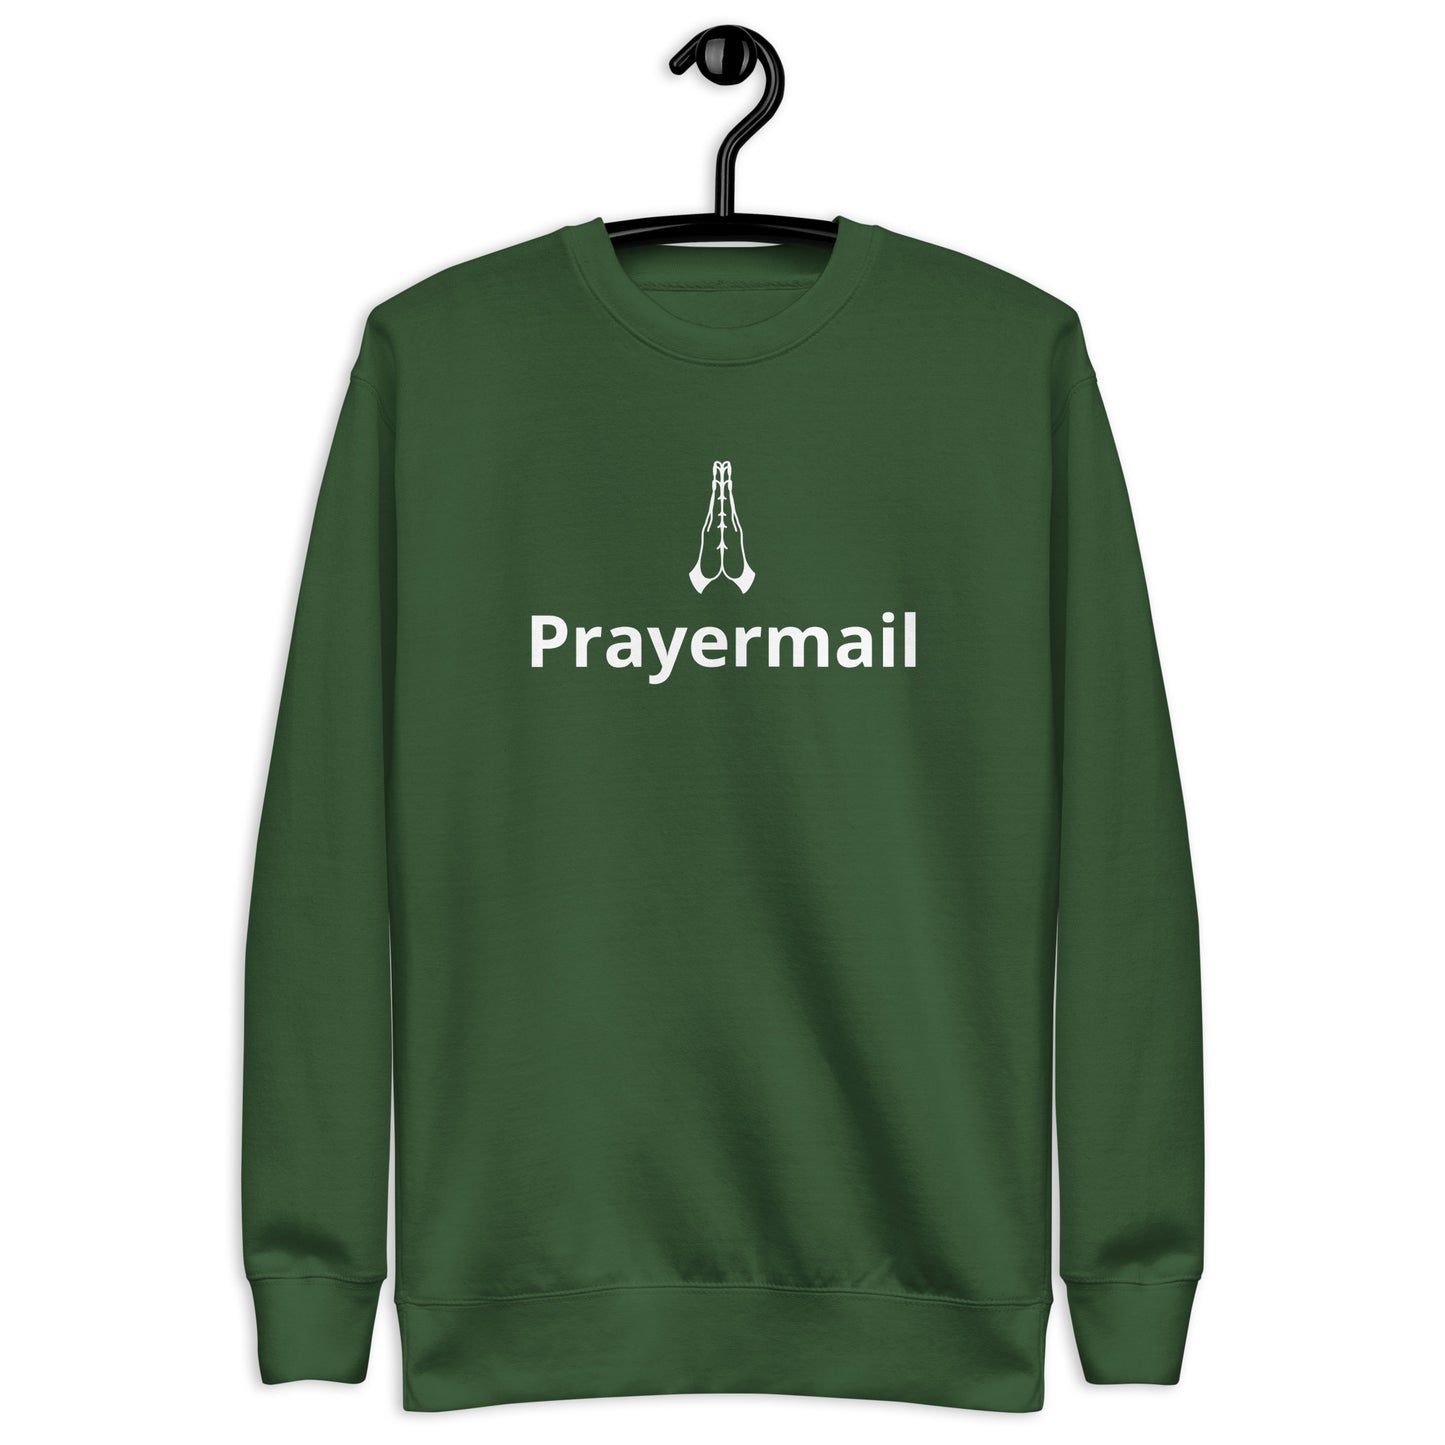 Prayermail Unisex Premium Sweatshirt